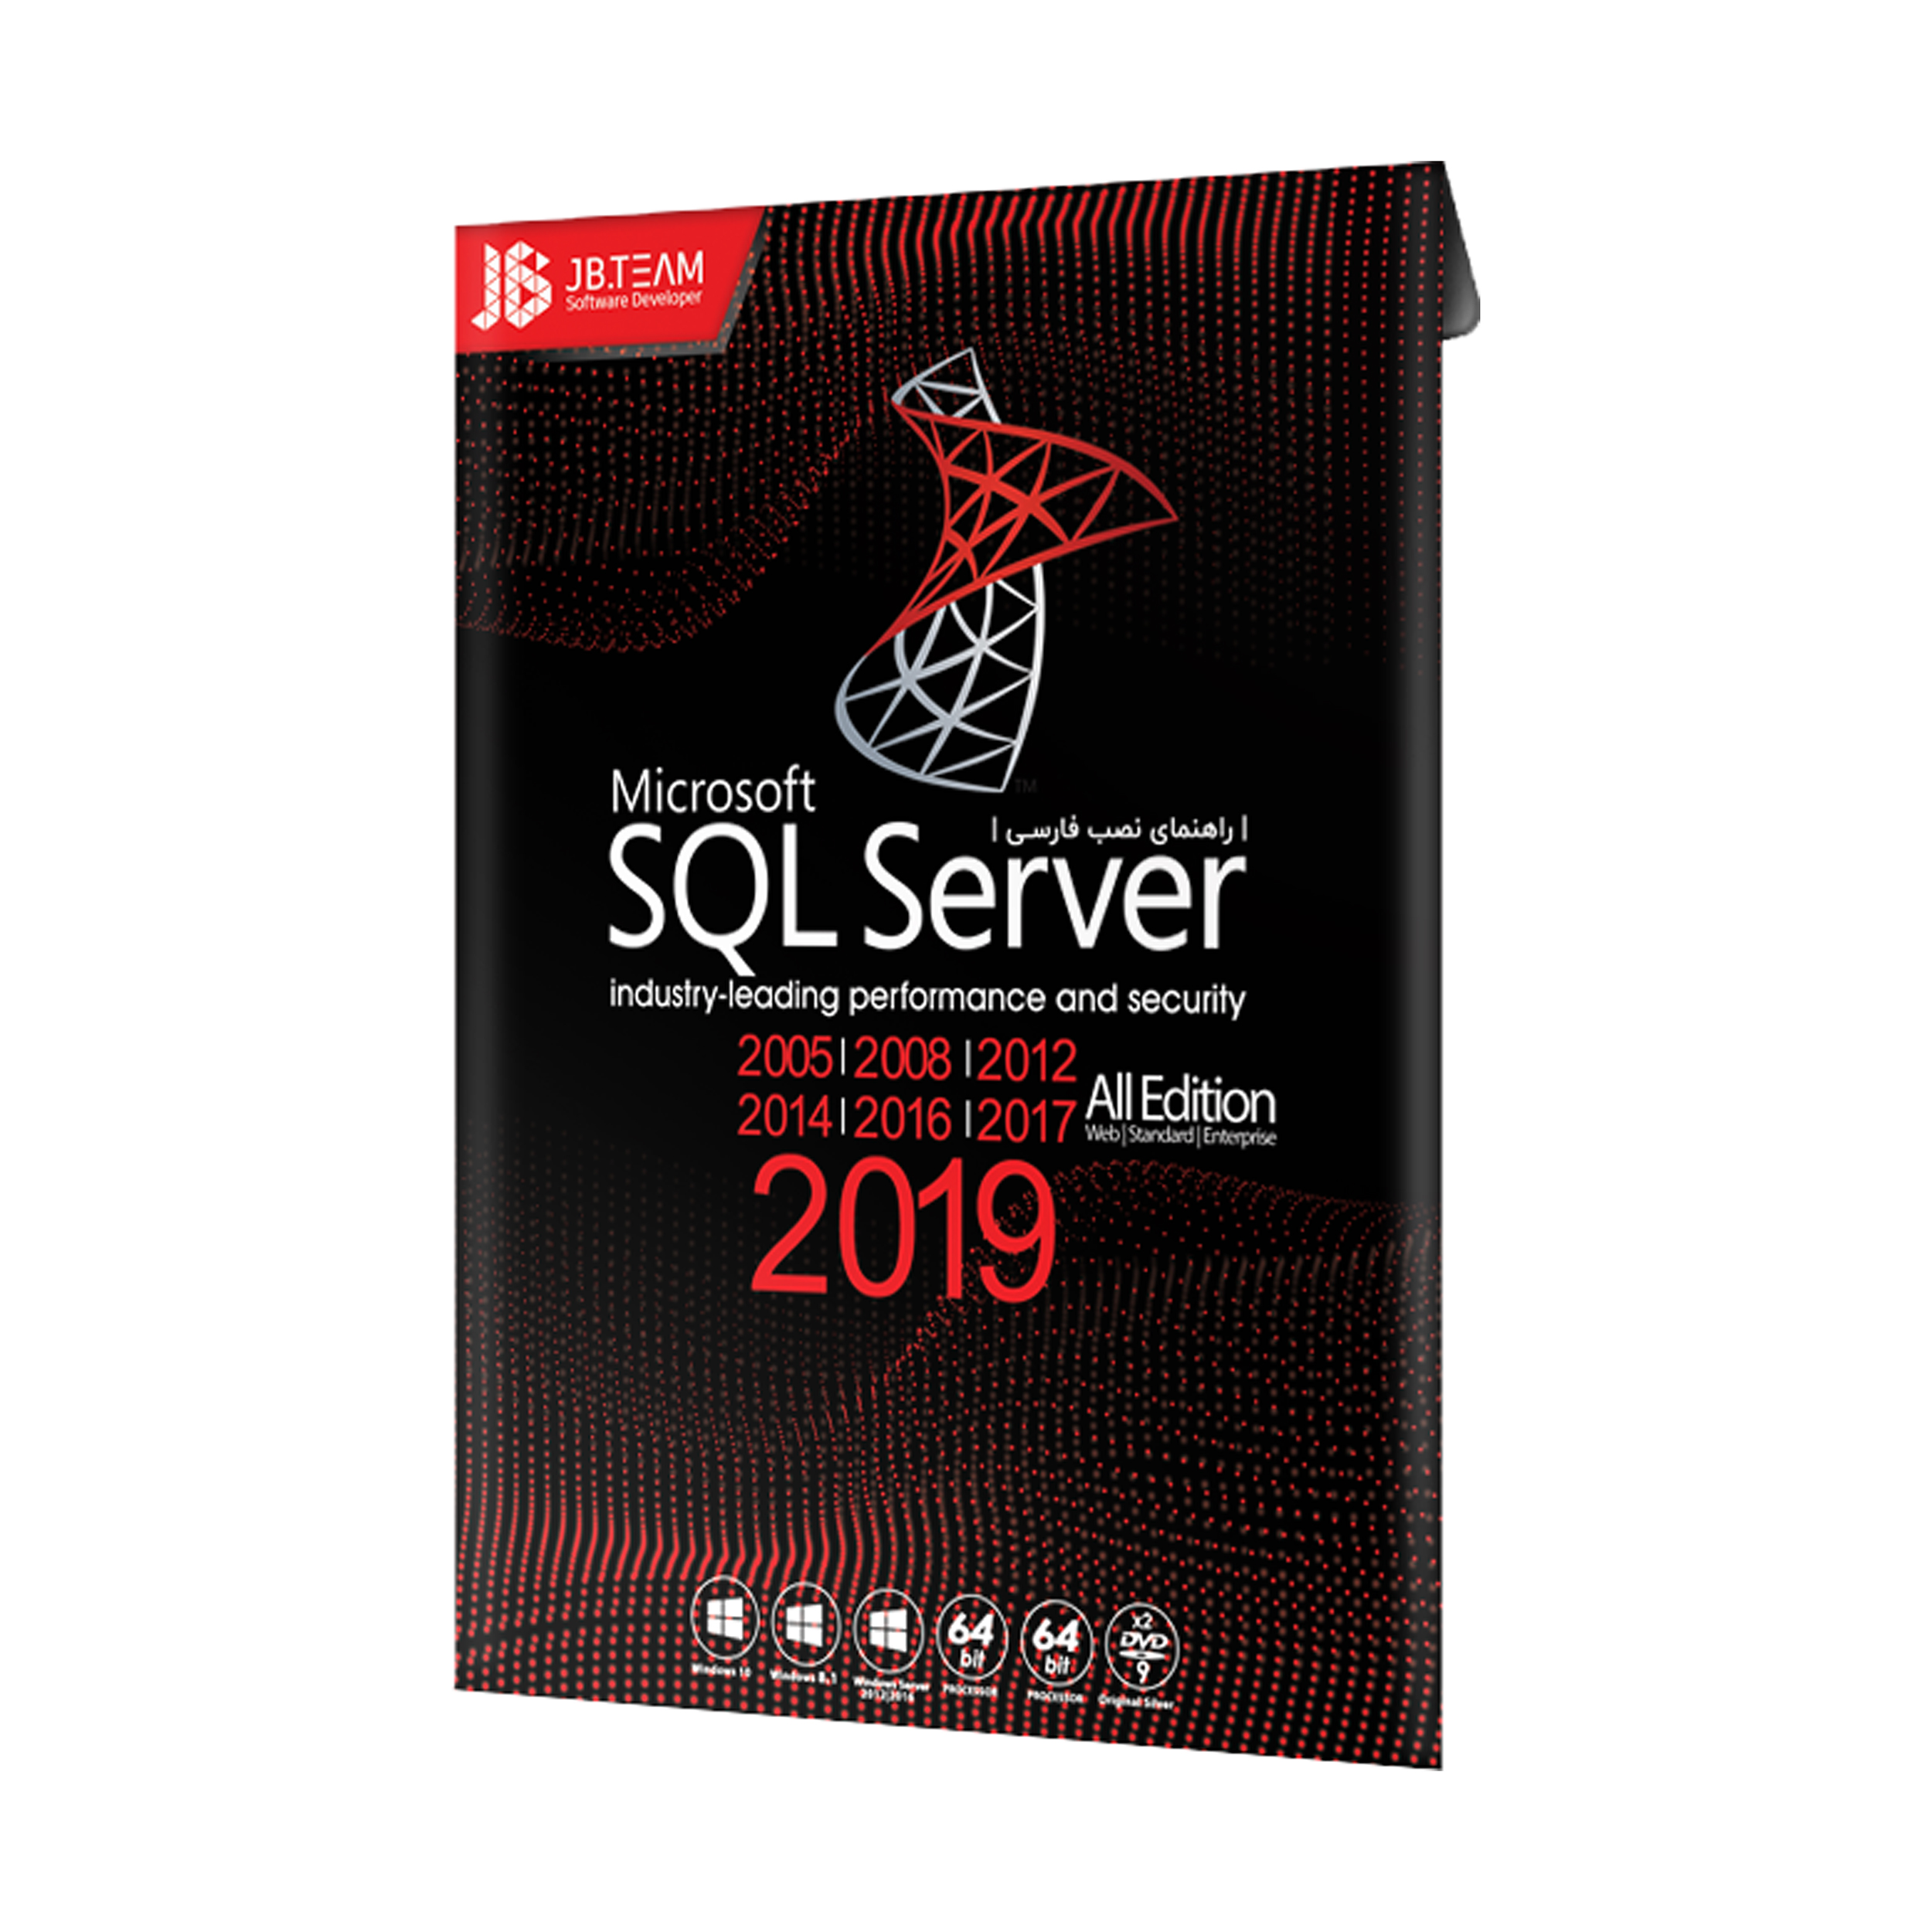 نرم افزار SQL Server 2019 نشر جی بی تیم